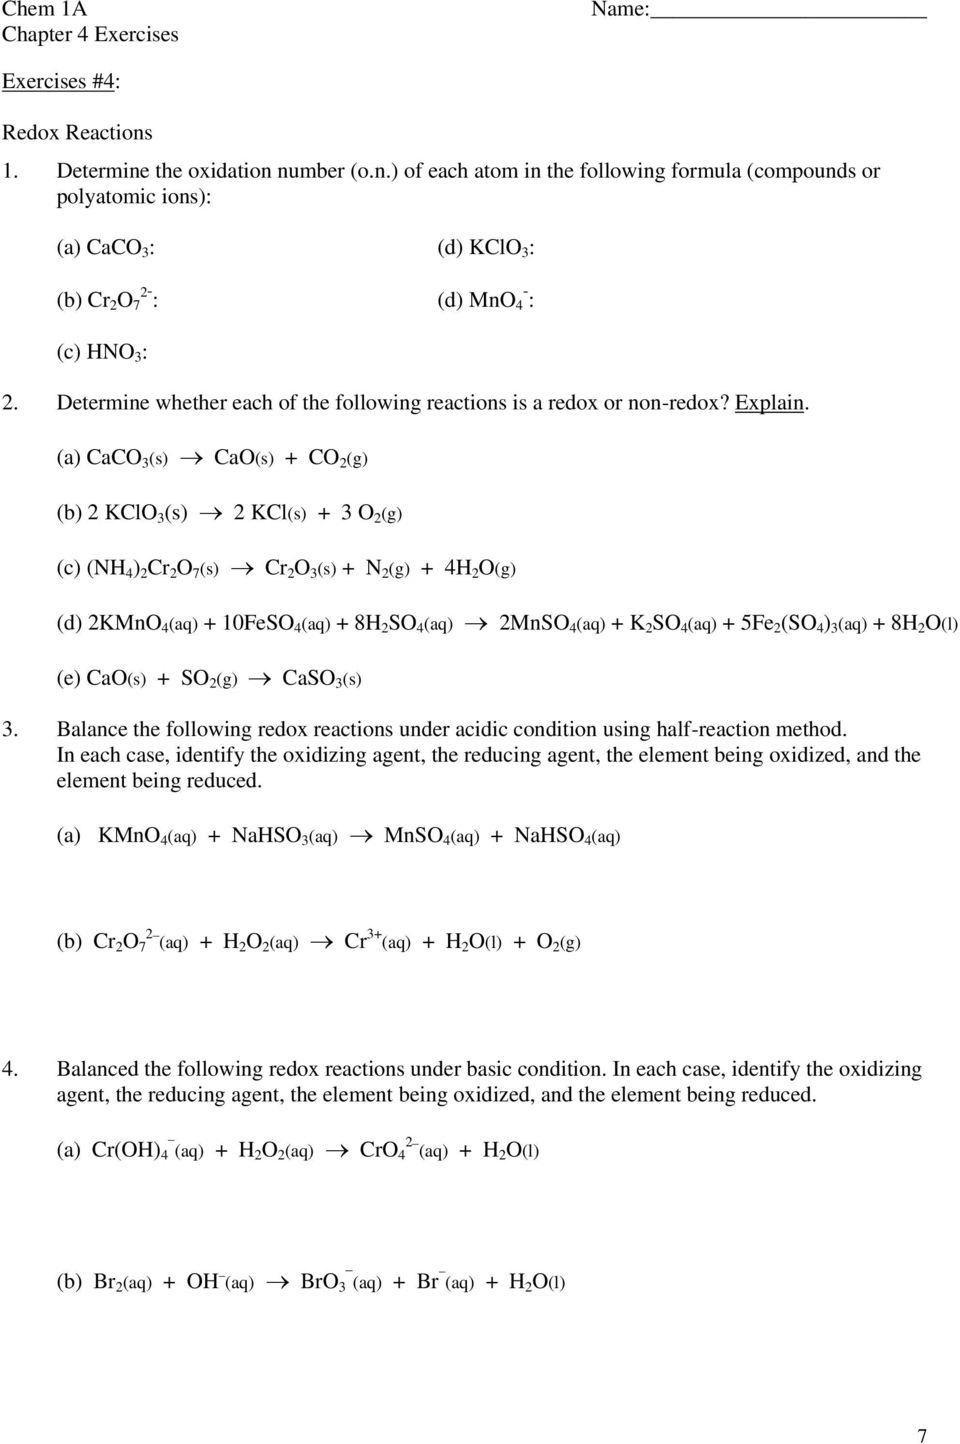 (a) CaCO 3 (s) CaO(s) + CO 2 (g) (b) 2 KClO 3 (s) 2 KCl(s) + 3 O 2 (g) (c) (NH 4 ) 2 Cr 2 O 7 (s) Cr 2 O 3 (s) + N 2 (g) + 4H 2 O(g) (d) 2KMnO 4 (aq) + 10FeSO 4 (aq) + 8H 2 SO 4 (aq) 2MnSO 4 (aq) + K